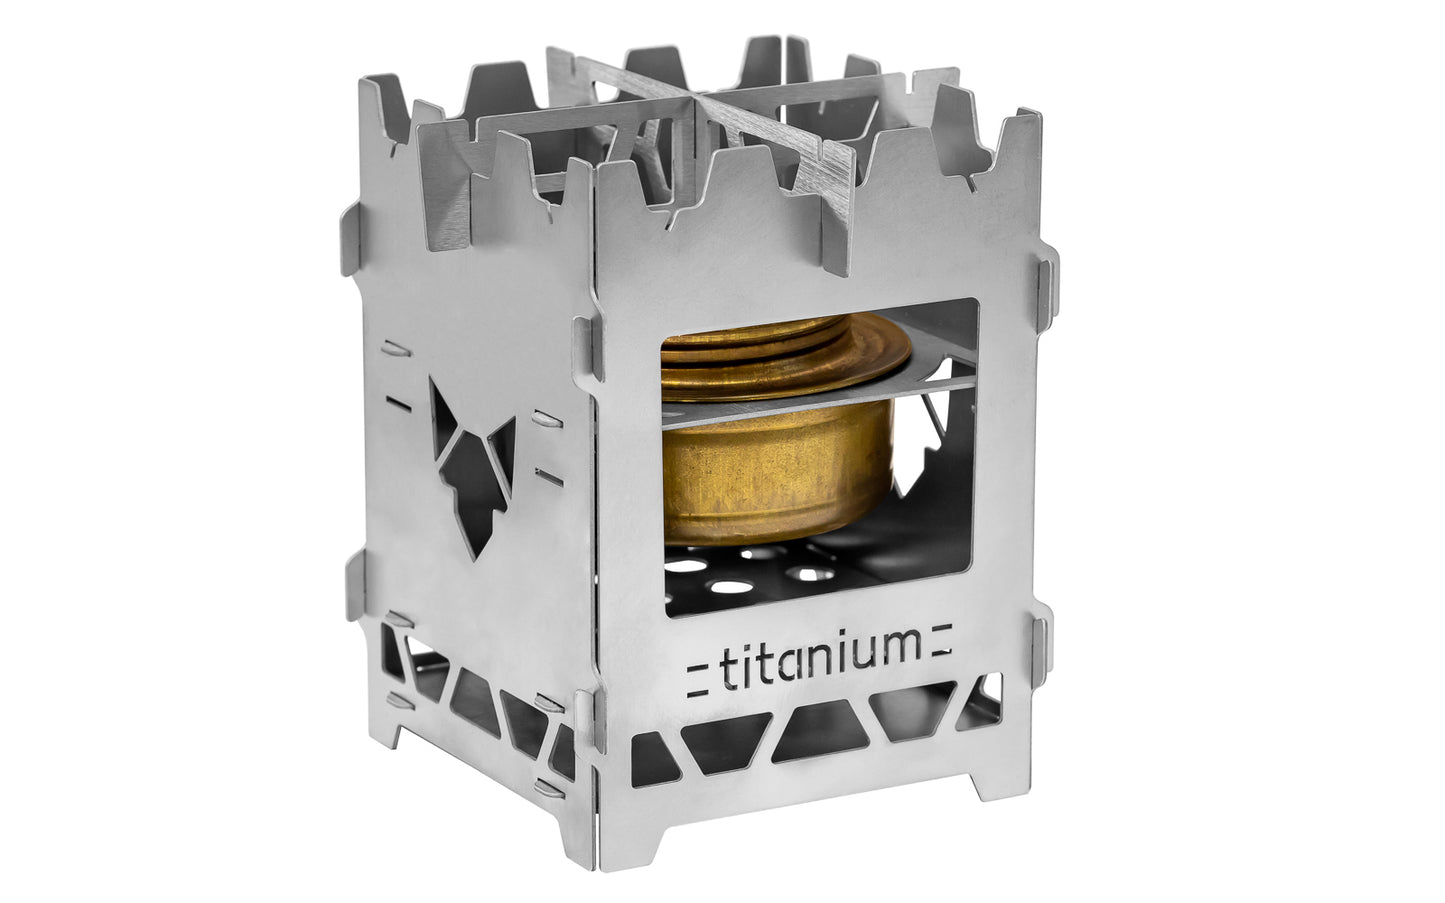 Titan Hobo mit herausgeschnittenem Titanium-Schriftzug und mit Einsatz für Trangia inklusive eingesetzten Trangia Brenner.